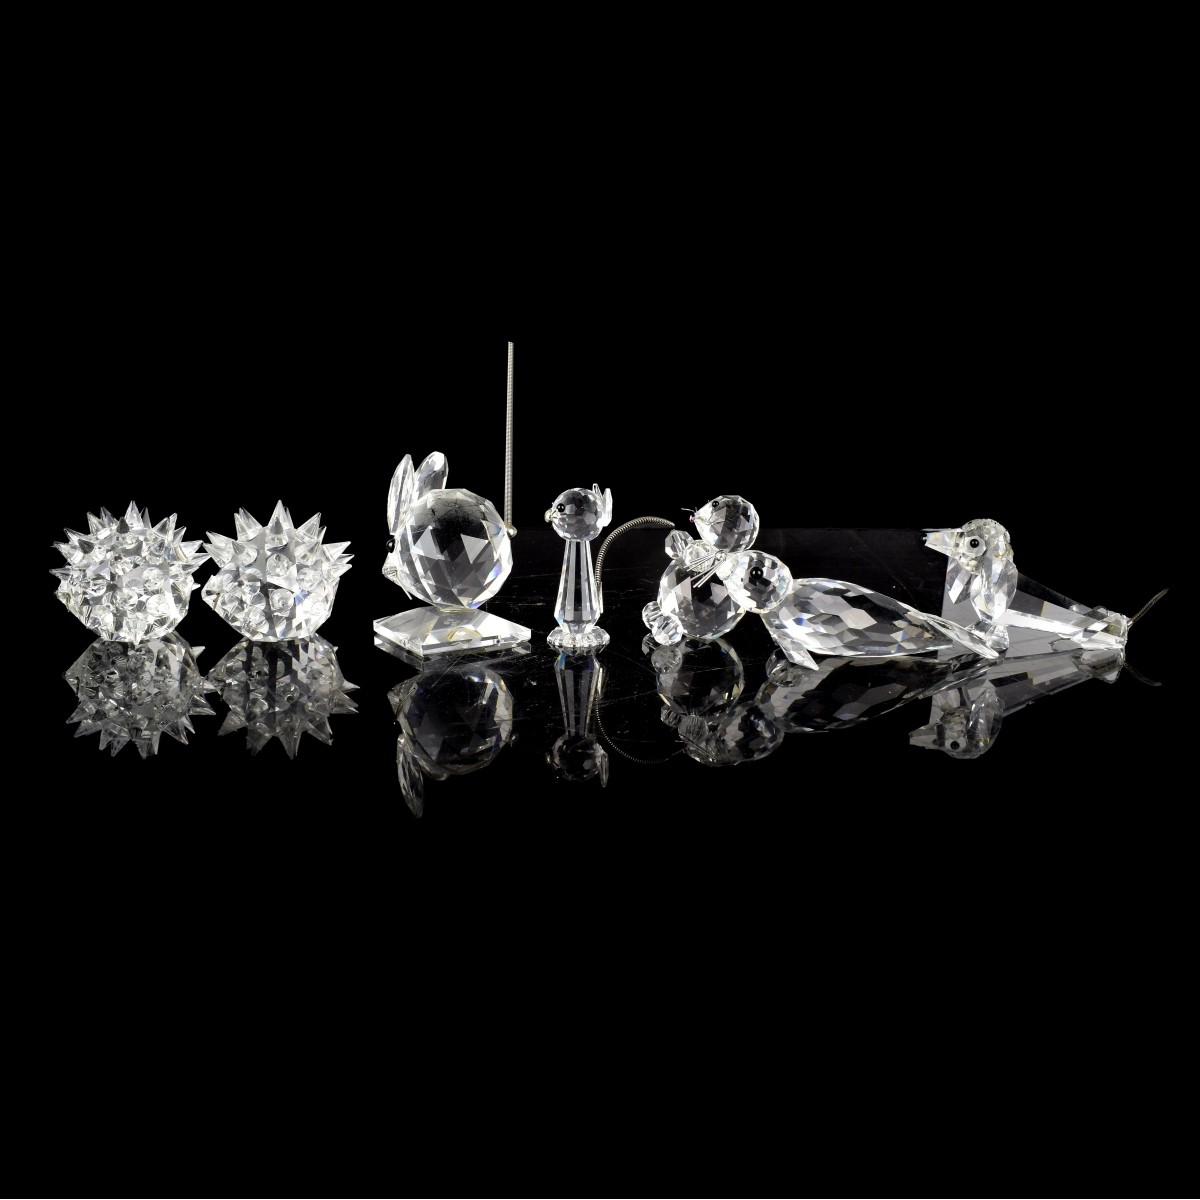 Swarovski Crystal Miniature Figurines